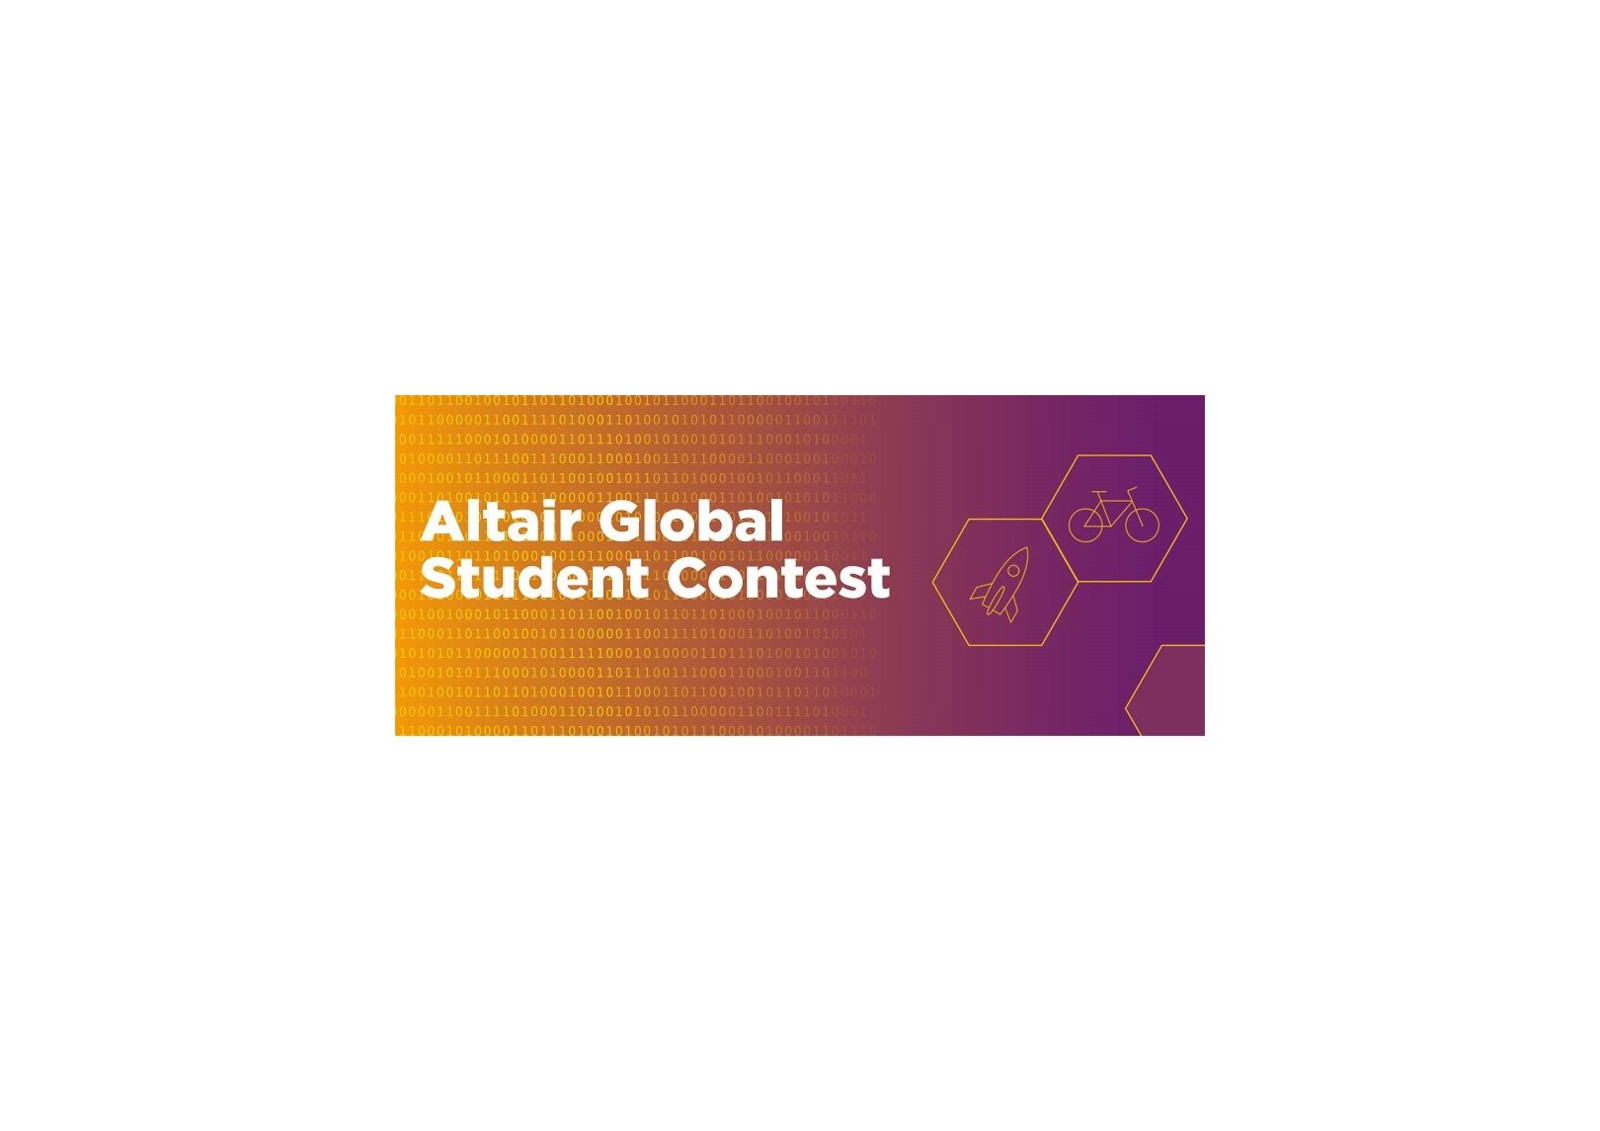 Der Global Student Contest findet von Mai 2023 bis April 2024 statt, eine Voranmeldung ist nicht notwendig.